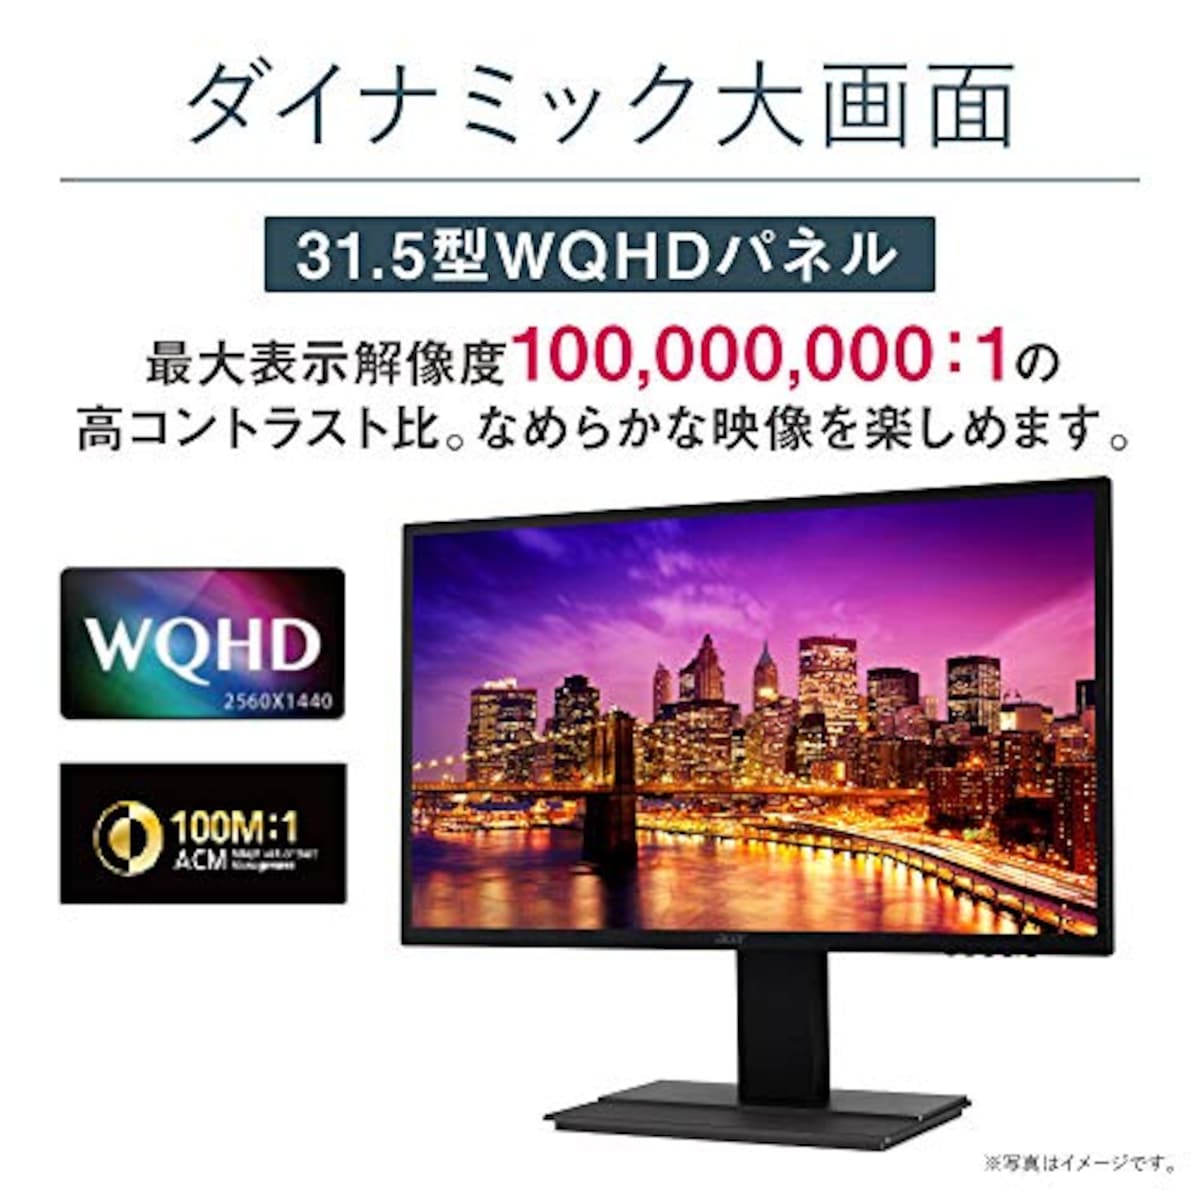  日本エイサー Acer モニター OmegaLine EB321HQUDbmidphx 31.5インチ IPS 非光沢 WQHD 75Hz 4ms HDMI DVI DisplayPort PIP/PBP VESAマウント対応 スピーカー内蔵 高さ調整/調節 スイベル チルト スピーカー搭載 フリッカーレス ブルーライト軽減画像2 